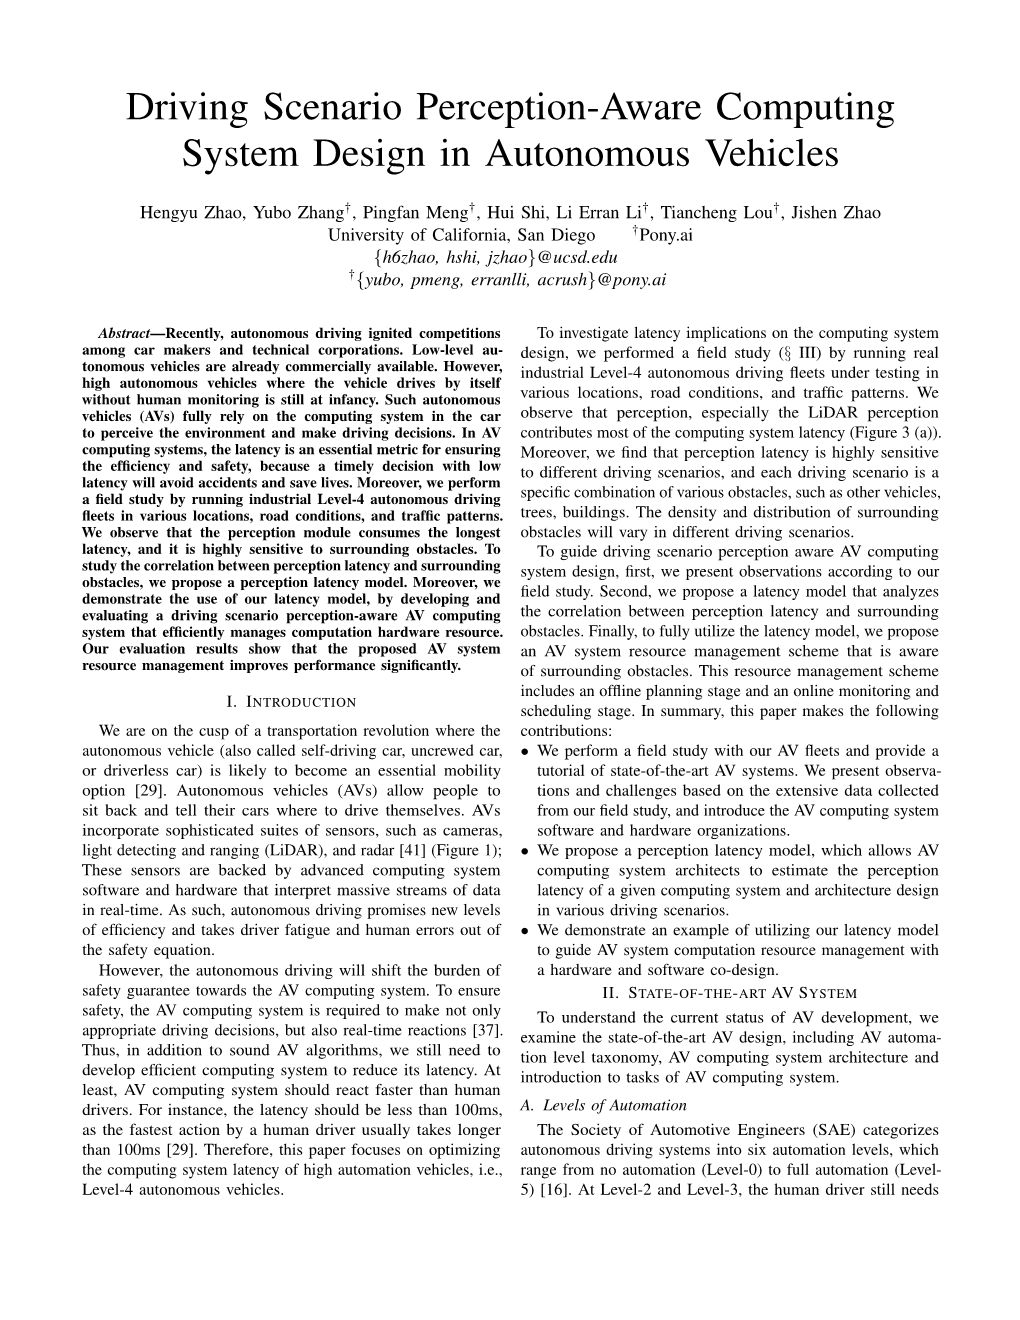 Driving Scenario Perception-Aware Computing System Design in Autonomous Vehicles